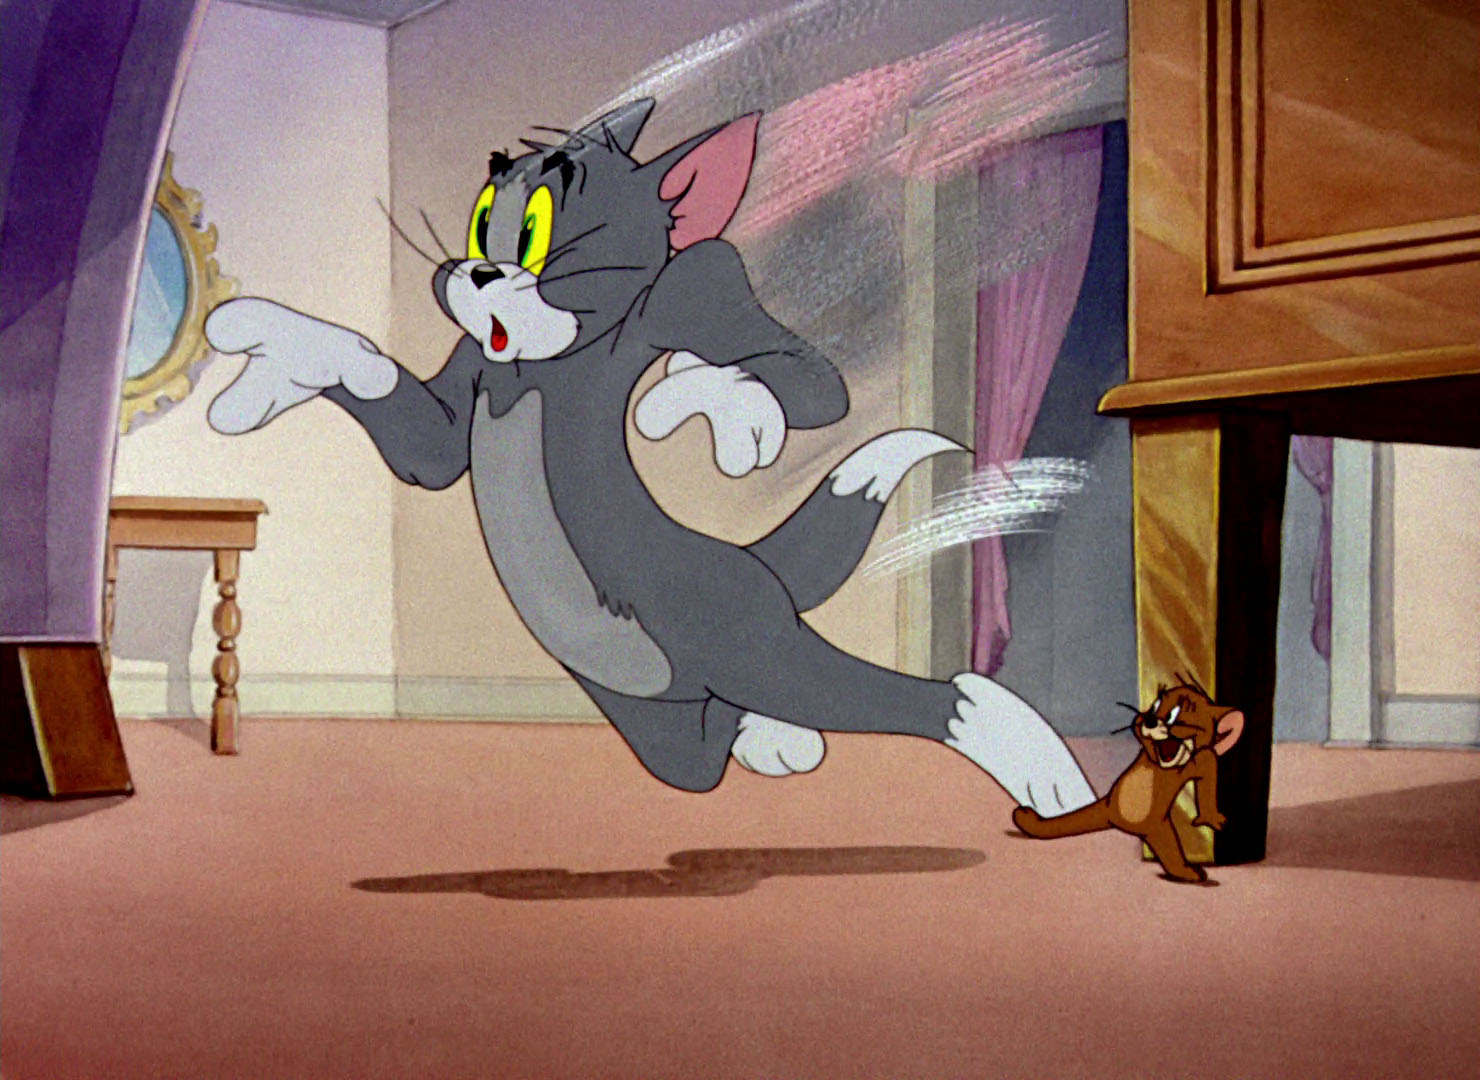 Том и серий читать. Том и Джерри Кадр. Tom and Jerry кадры. Том и джерикадры из мультфильма.